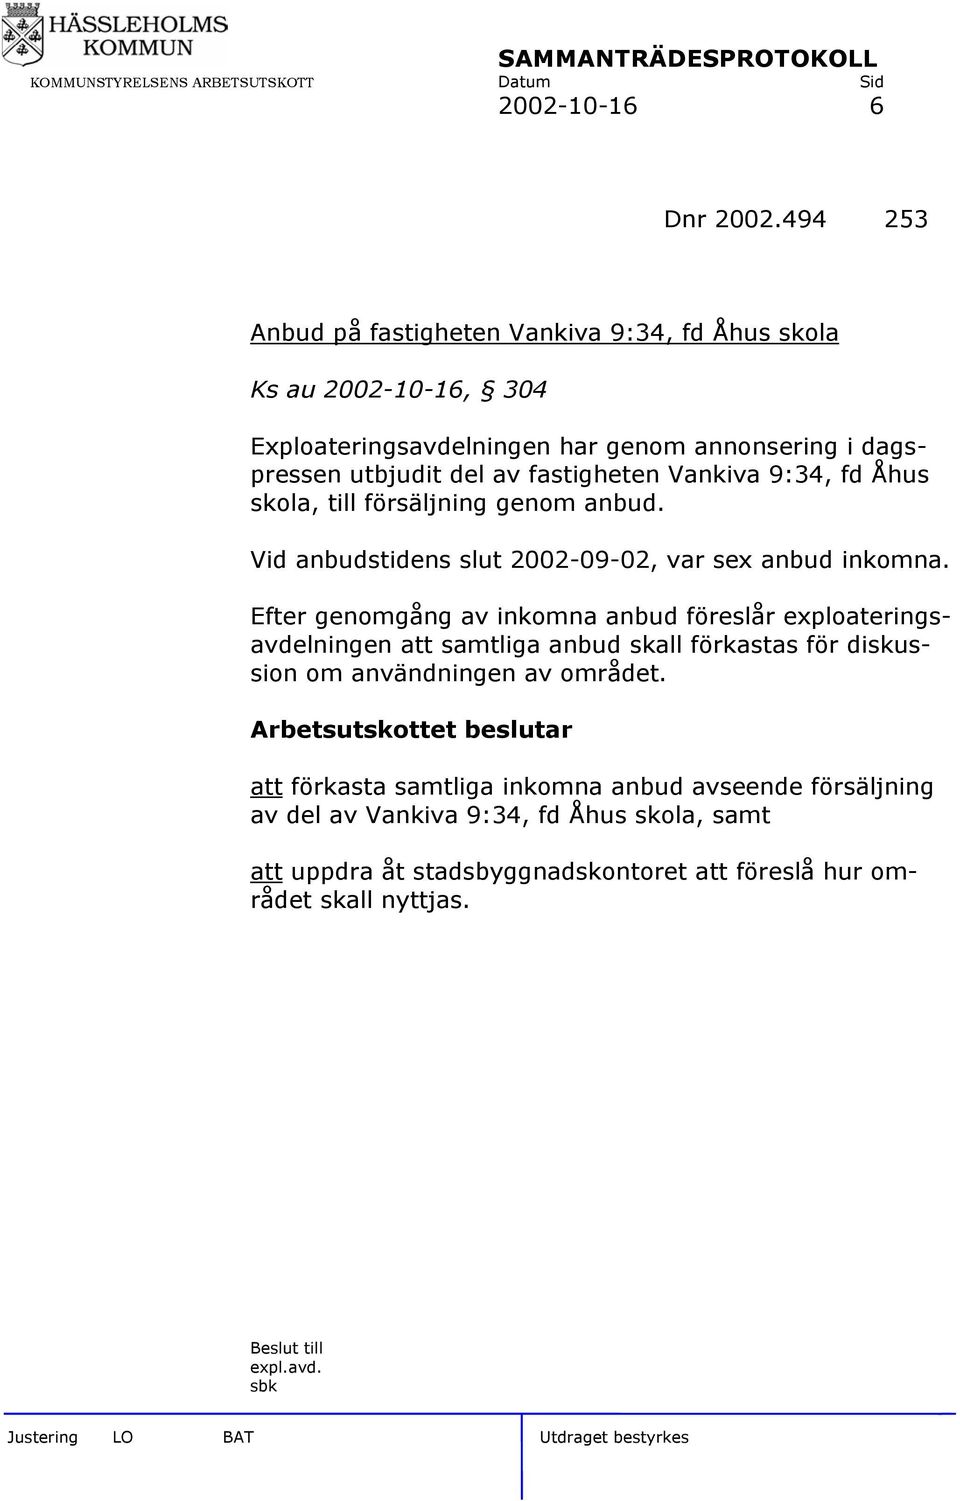 fastigheten Vankiva 9:34, fd Åhus skola, till försäljning genom anbud. Vid anbudstidens slut 2002-09-02, var sex anbud inkomna.